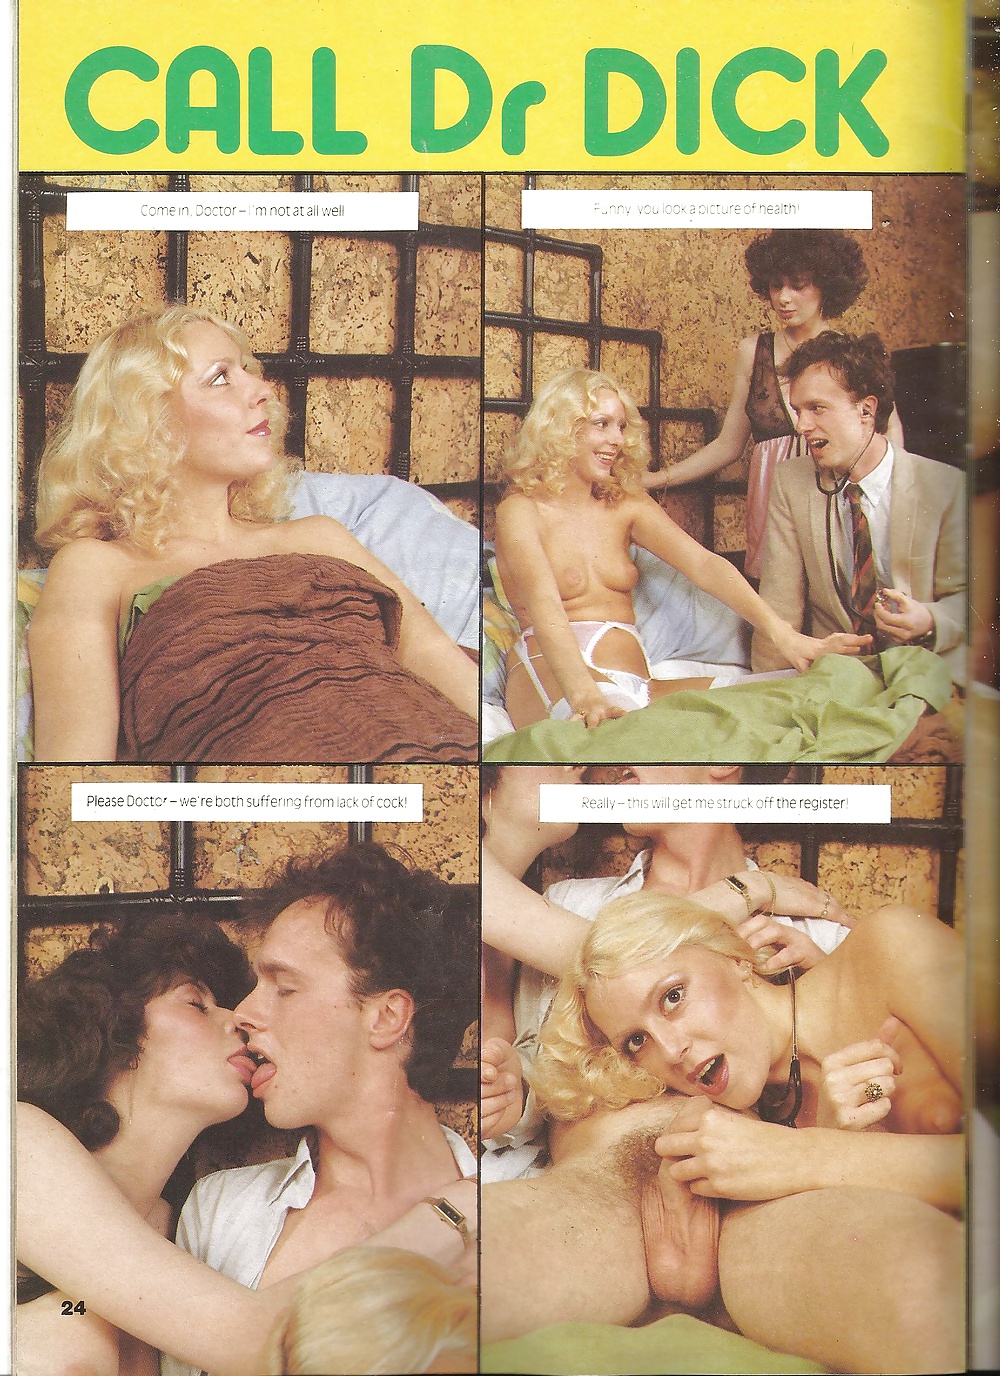 1980s Vintage Porn Scans - Vintage Uk Magazine Scan Screw Magazine S Pics | SexiezPix Web Porn